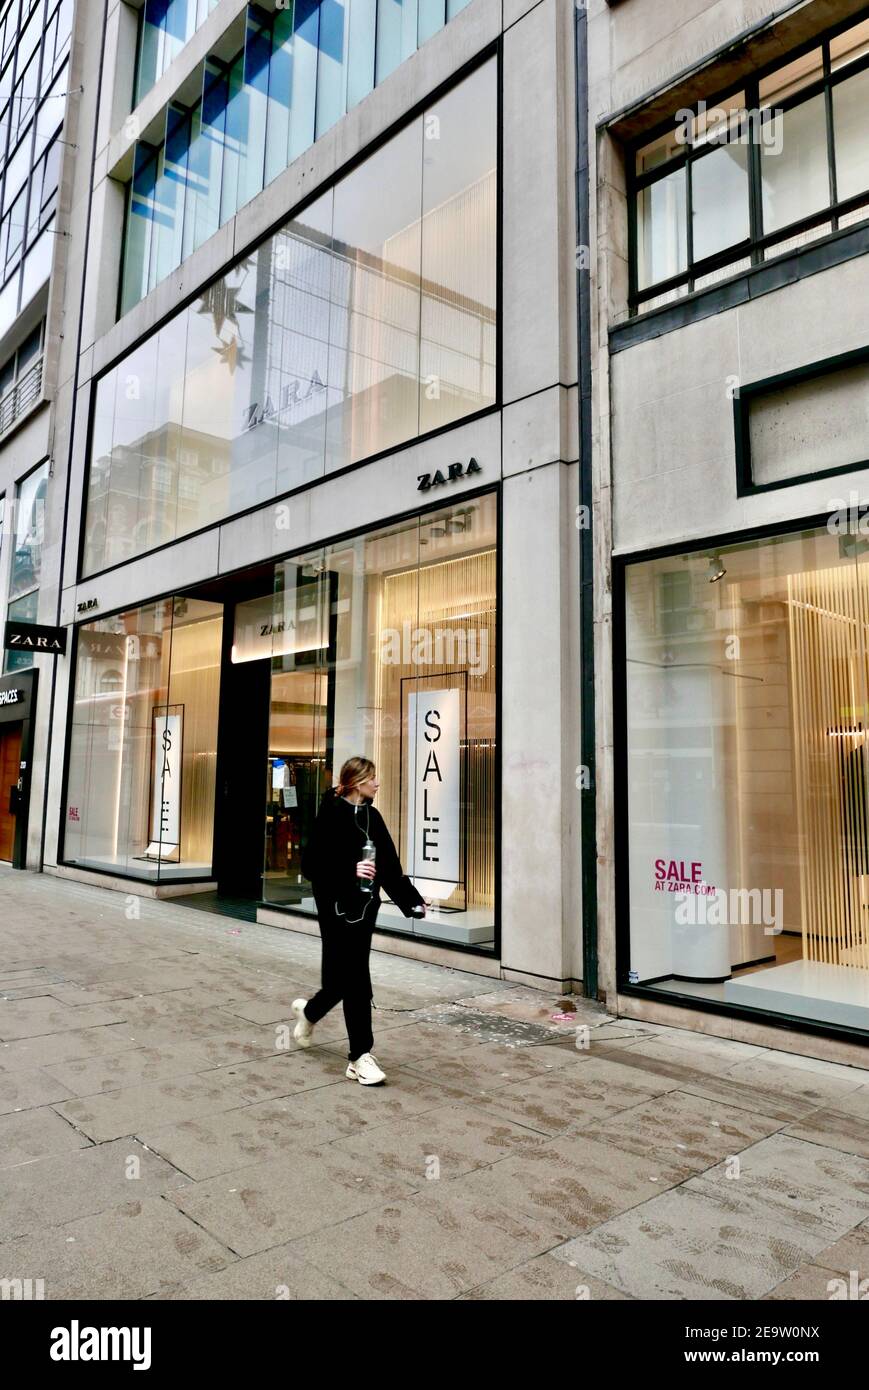 sabiduría Humorístico Hombre rico Una mujer joven pasa por la tienda de ropa Zara actualmente cerrada debido  al cierre de la pandemia de covid19 que está afectando a la economía.  Regent Street, Londres, Reino Unido Fotografía